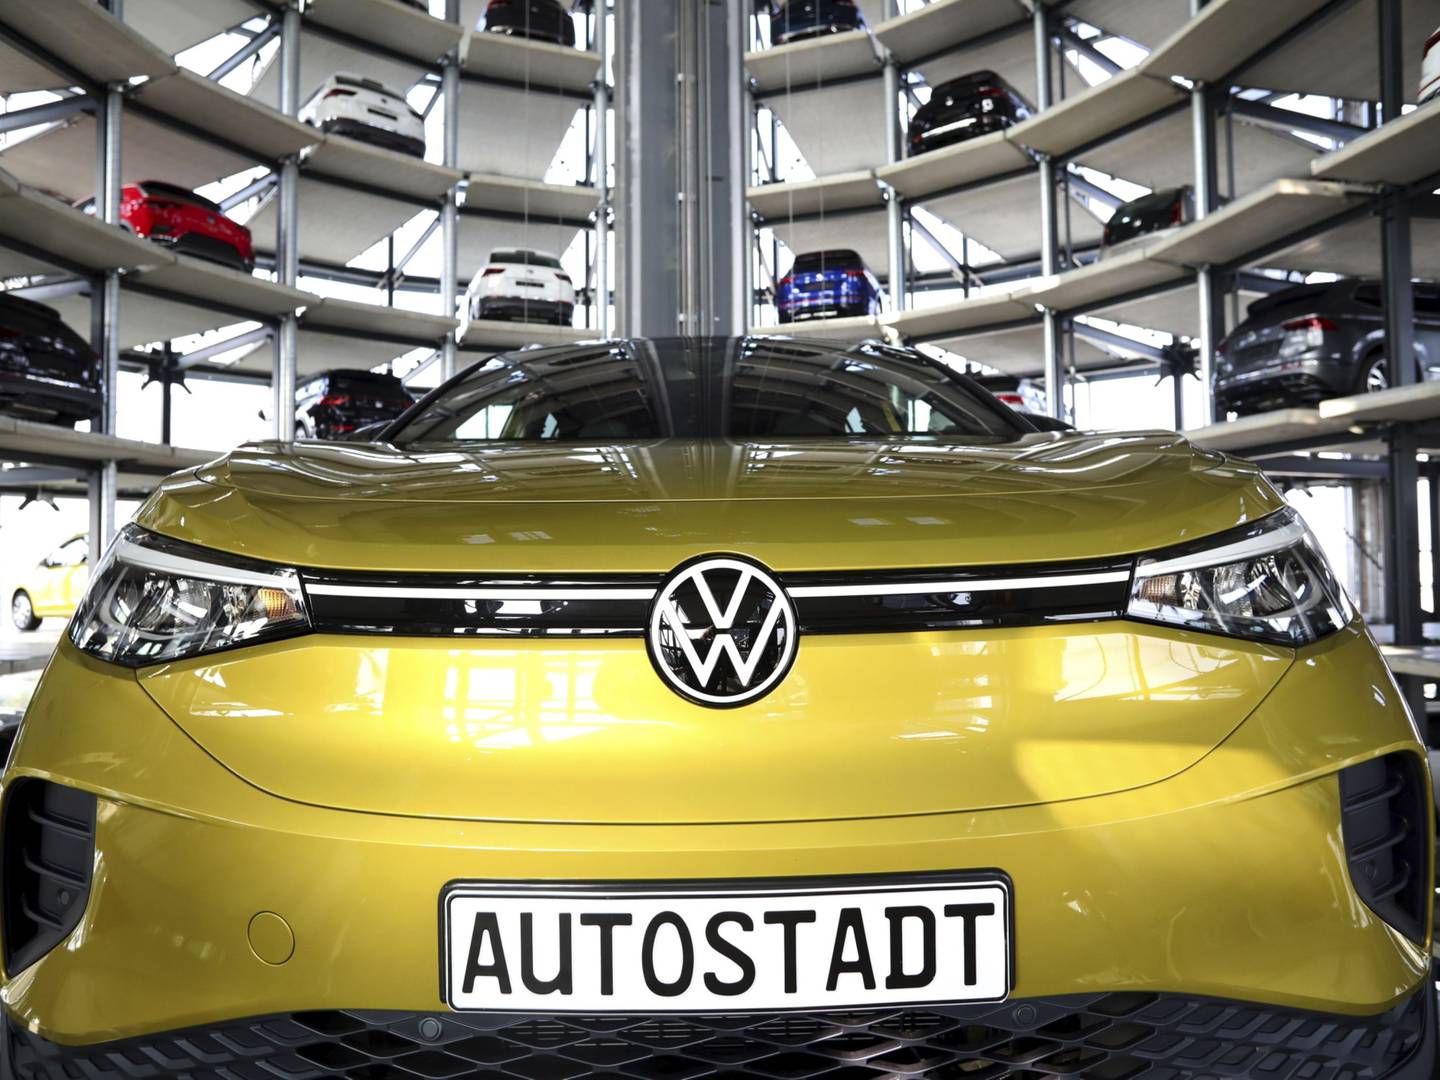 Un Volkswagen ID.4 eléctrico Sport Utility Vehicle (SUV) dentro de las torres de entrega de automóviles de Volkswagen AG (VW) Autostadt, en la planta del fabricante de automóviles en Wolfsburg, Alemania, el viernes 26 de marzo de 2021.